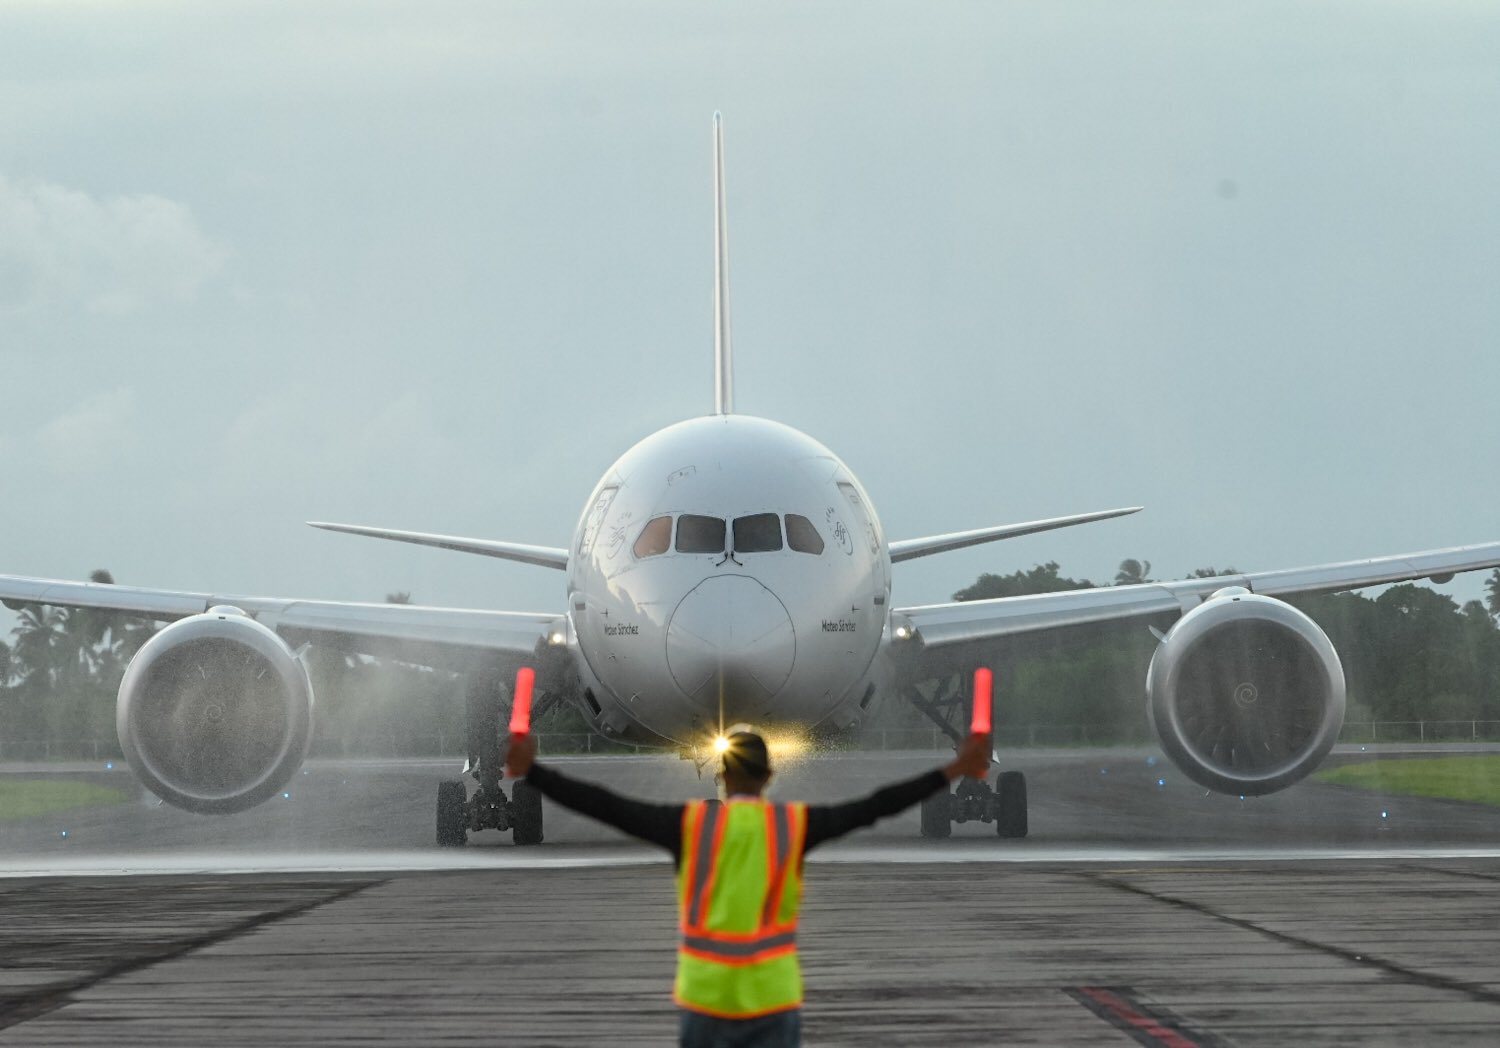 IATA prevé más interrupciones en aeropuertos a medida que aumente la demanda de pasajeros